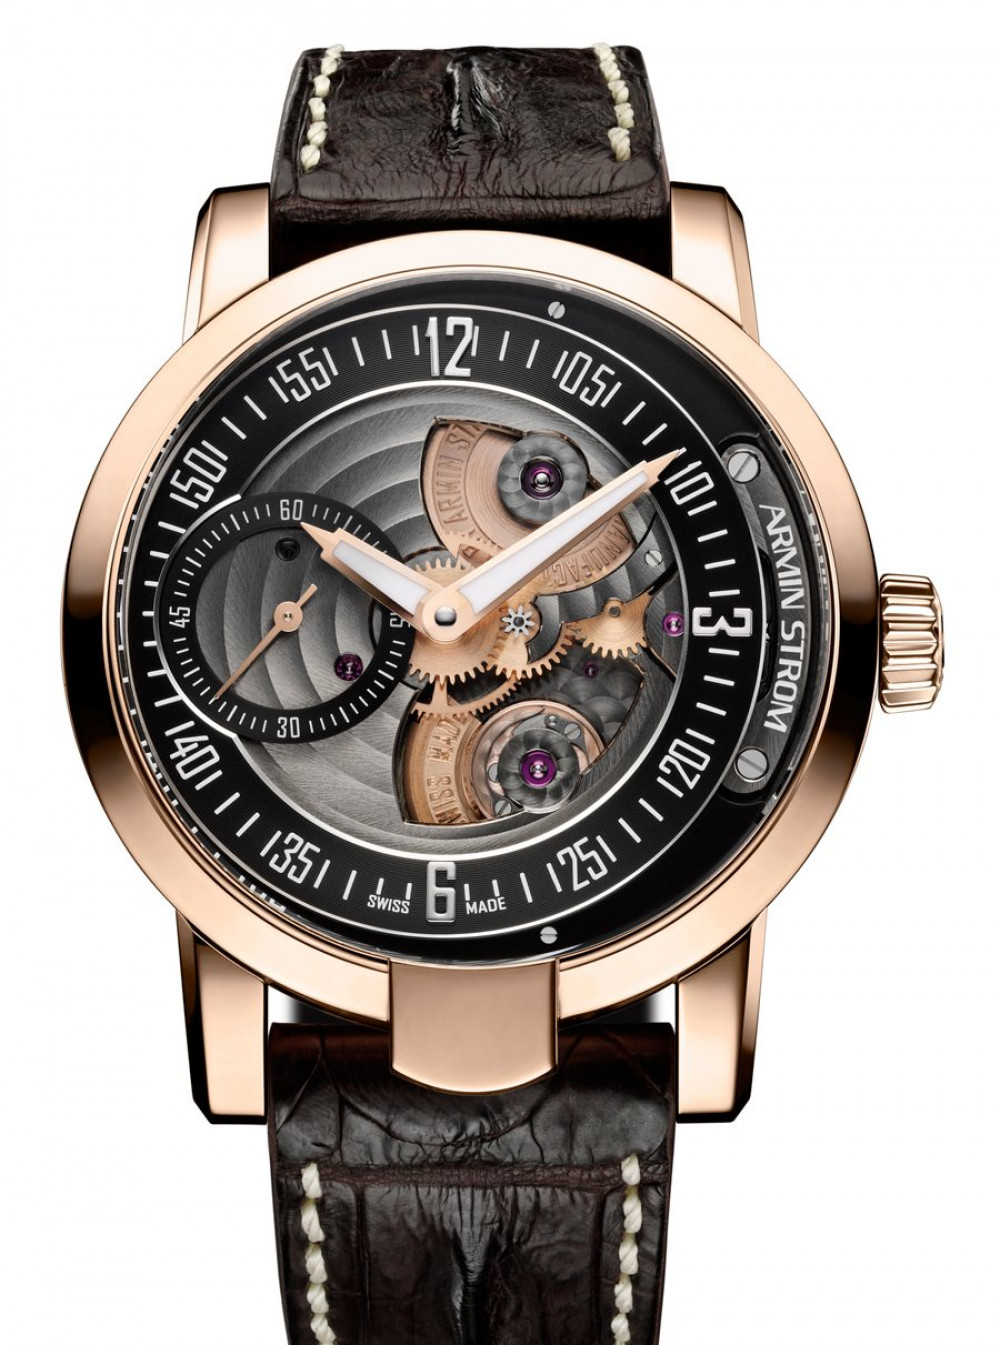 Zegarek firmy Armin Strom, model Gravity Fire